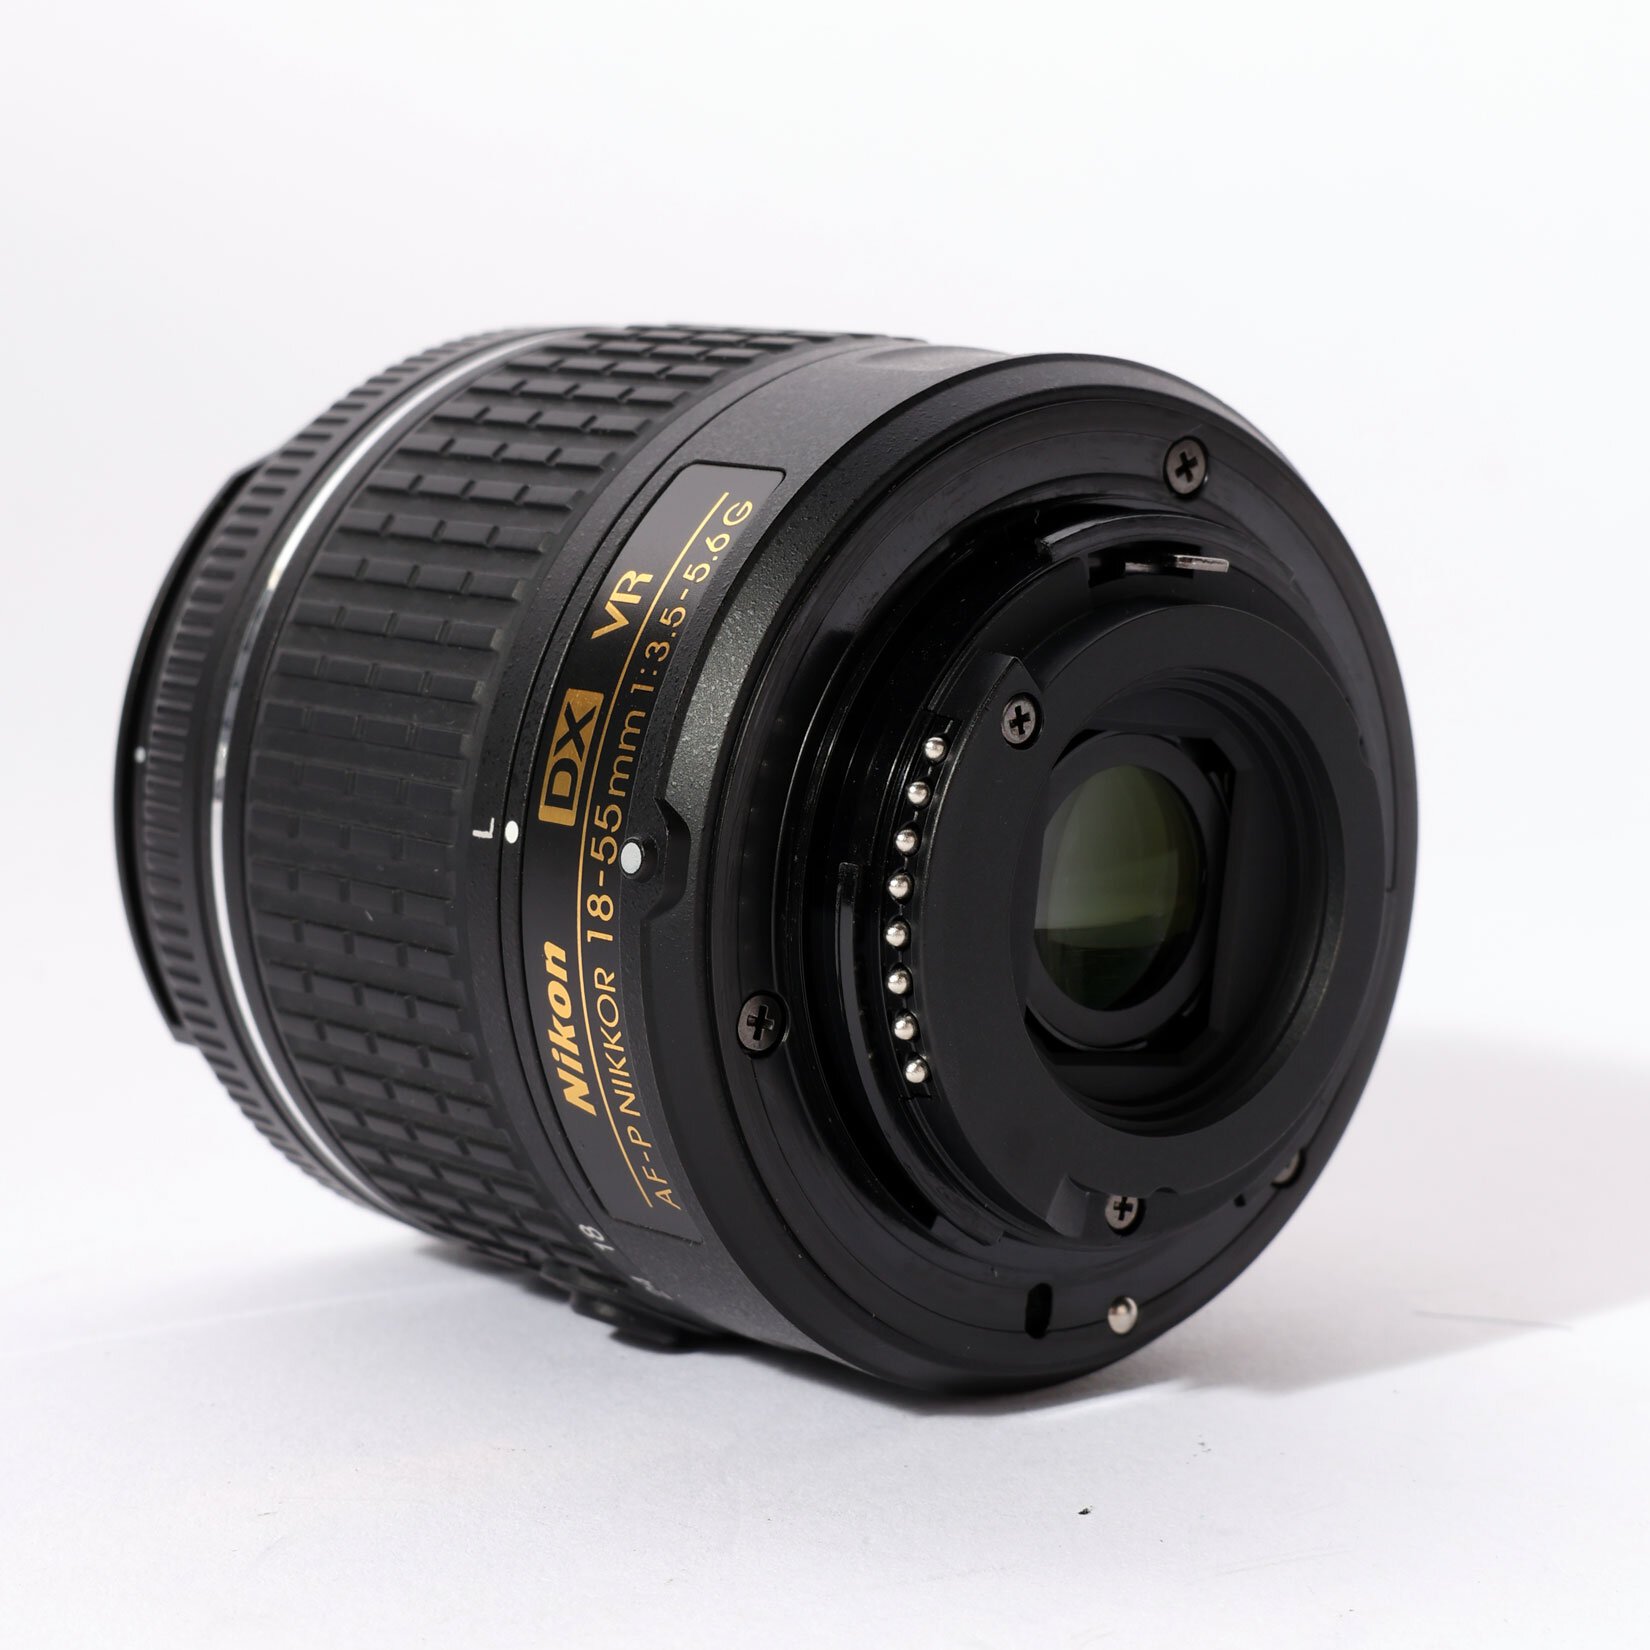 Nikon DX VR AF-P Nikkor 18-55mm 1:3.5-5.6 G